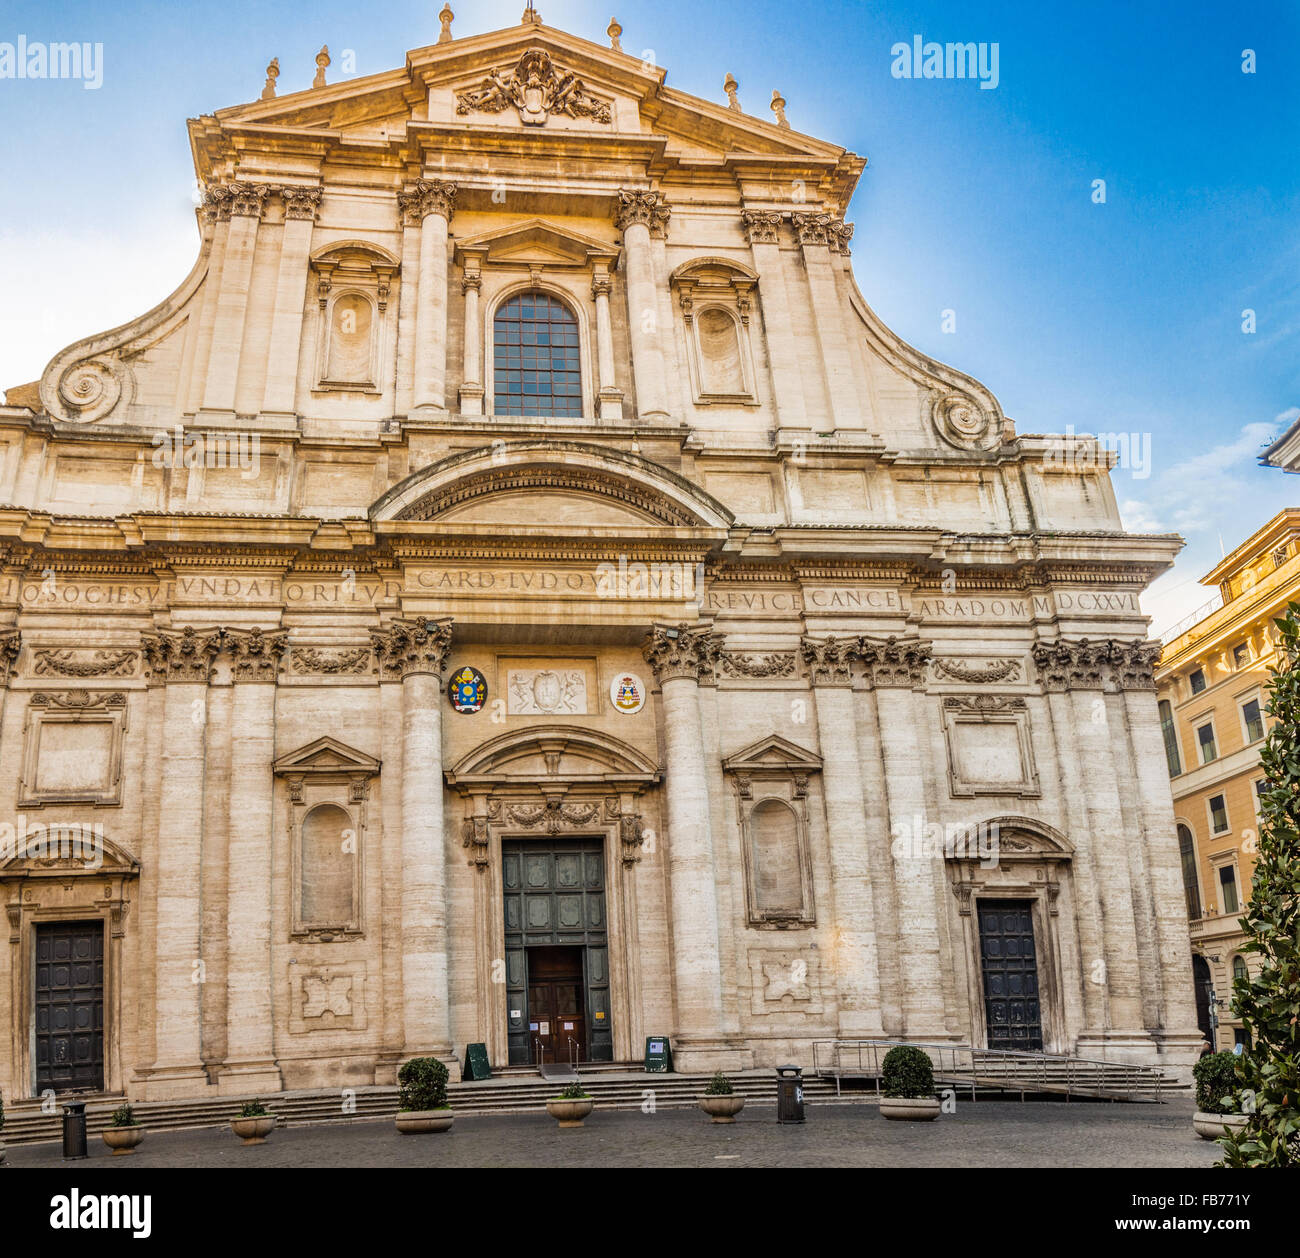 La iglesia barroca de San Ignacio de Loyola en el Campus Martius en Roma, Italia Foto de stock